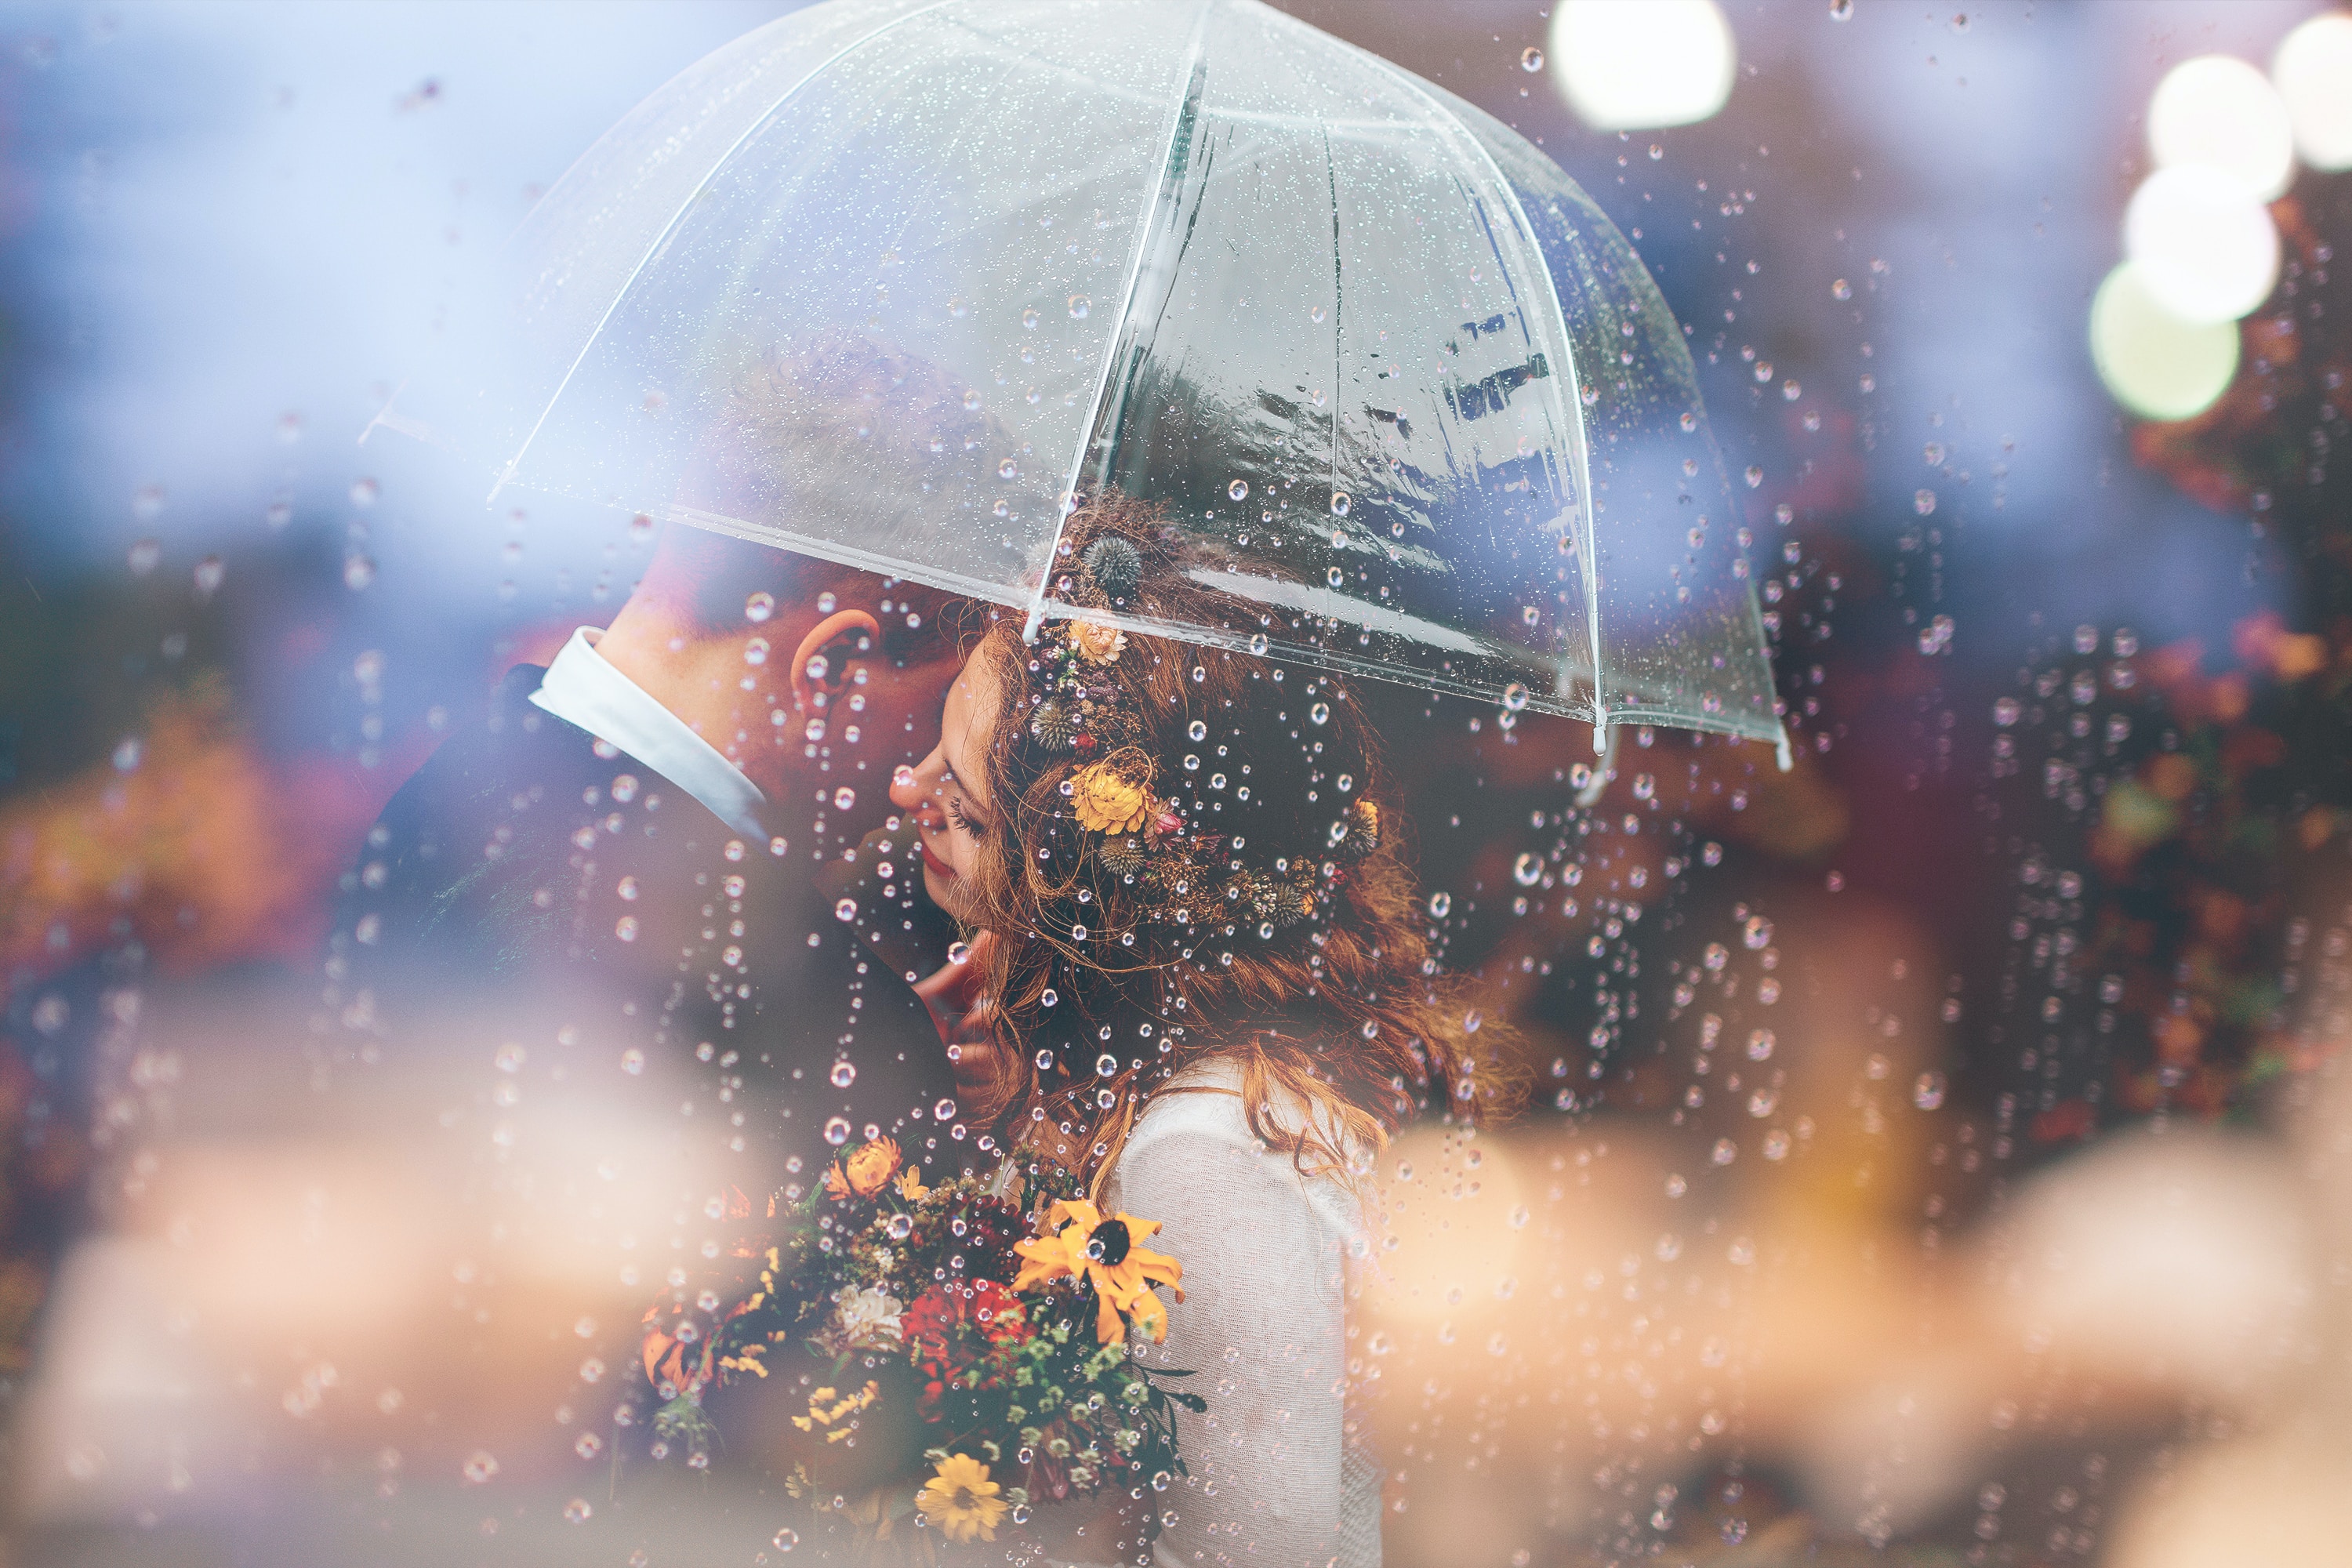 femeie si barbat care stau impreuna cu o umbrela in ploaie